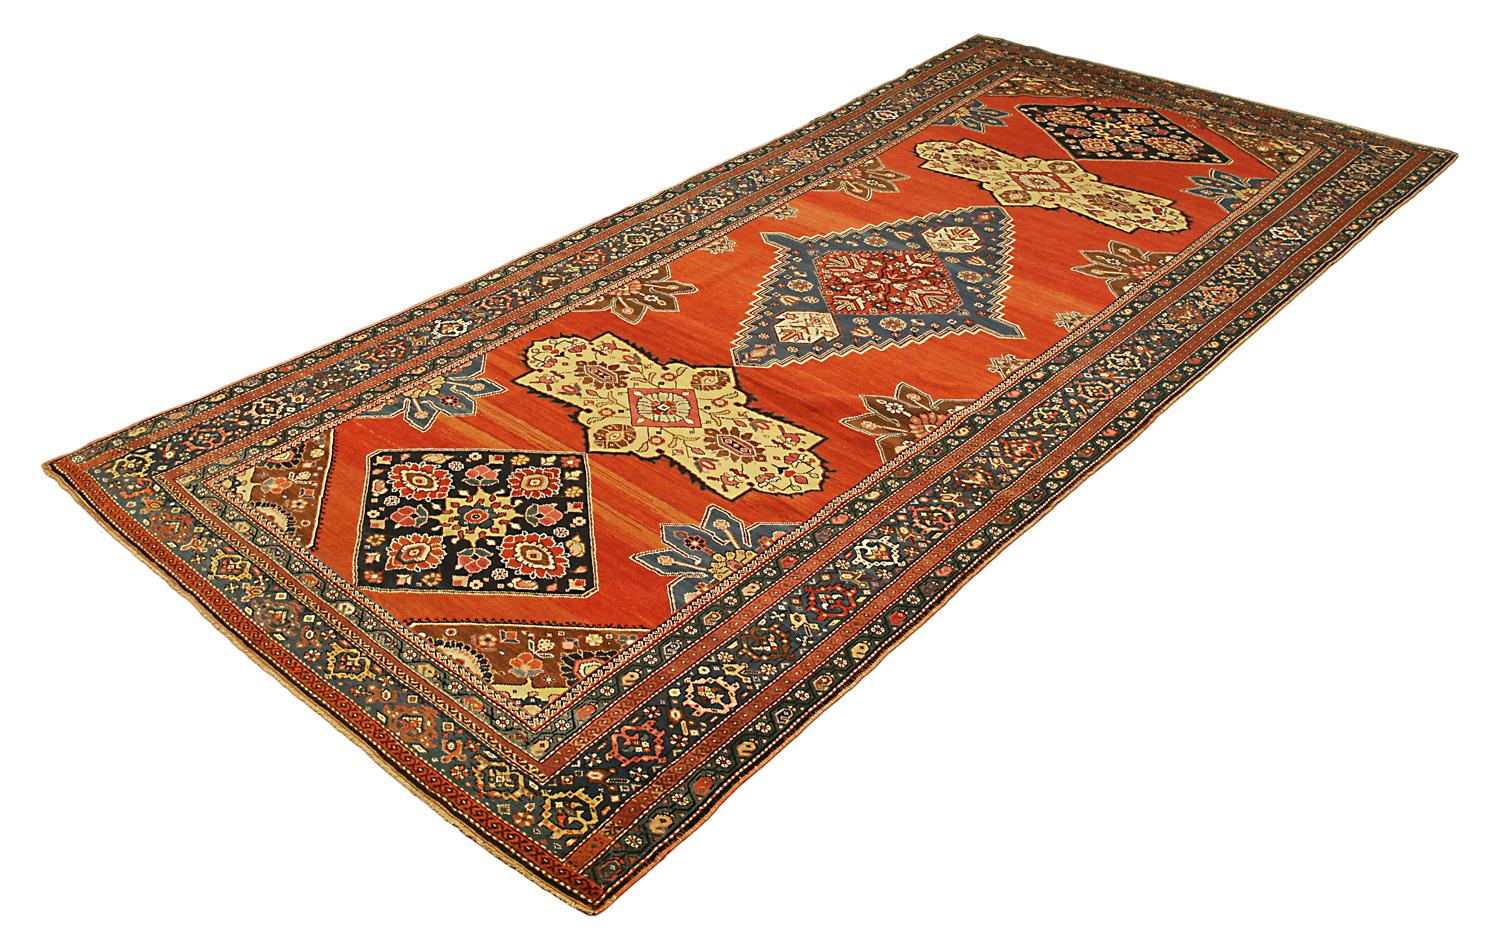 Les tapis anciens Karabag présentent les motifs les plus anciens et les plus variés parmi les tapis caucasiens. La beauté et le caractère unique de ces tapis sont dus à la fusion culturelle et aux anciennes traditions qui ont fortement influencé la